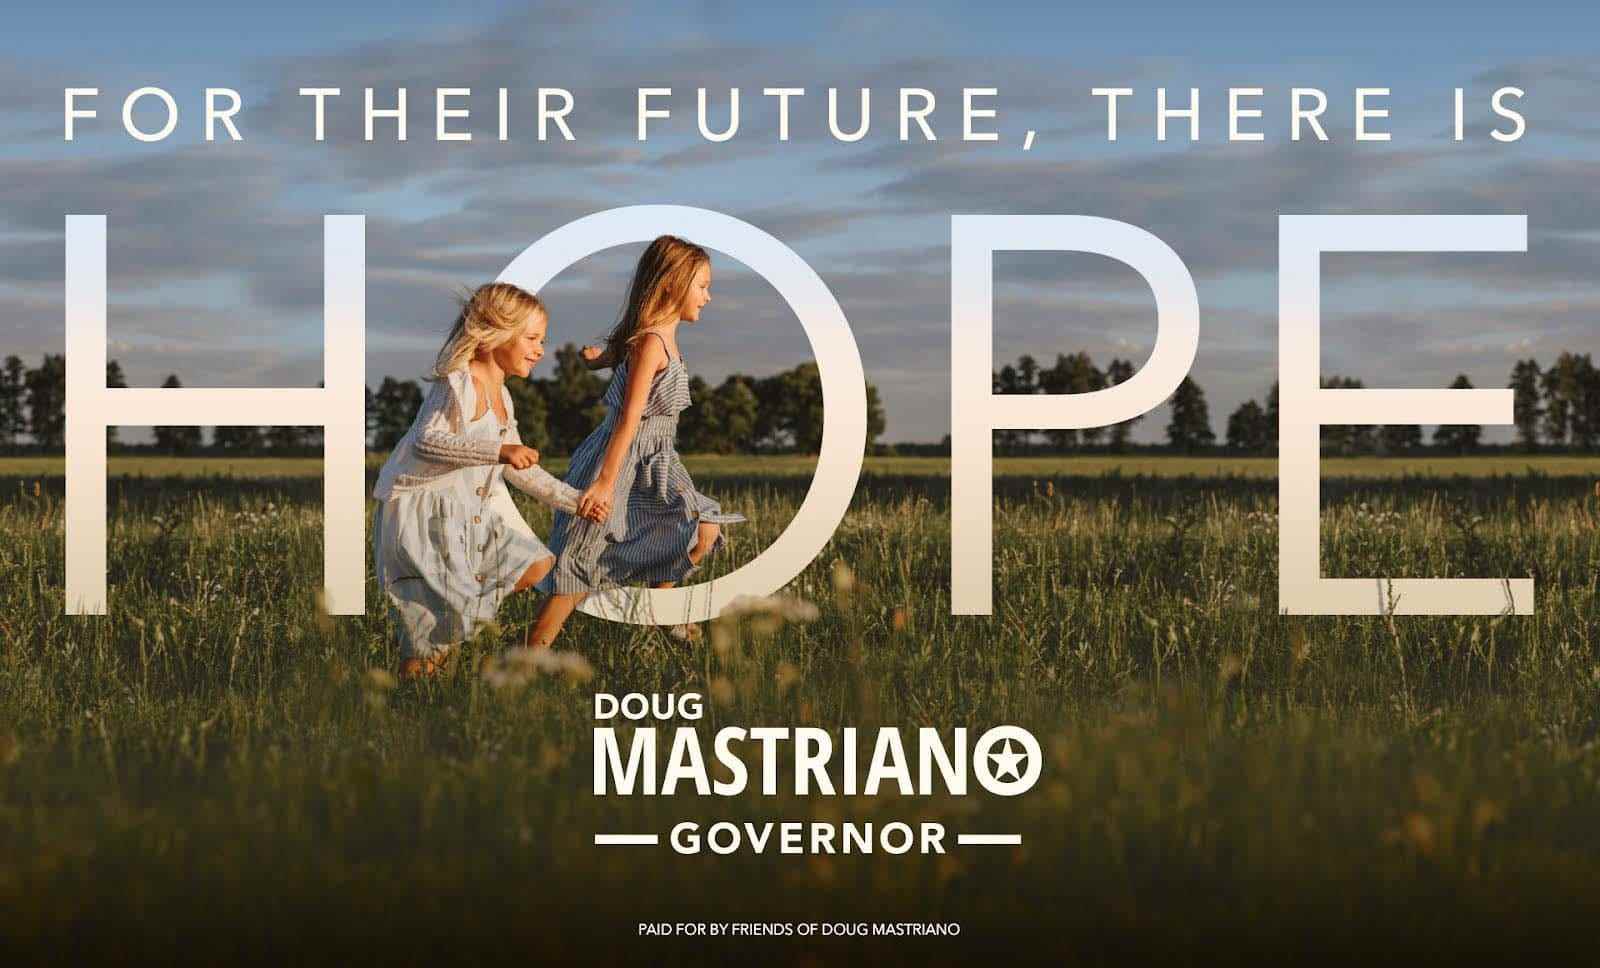 Mastriano-Werbung mit zwei Mädchen, die Händchen halten mit dem Tet: „Für ihre Zukunft gibt es Hoffnung.“